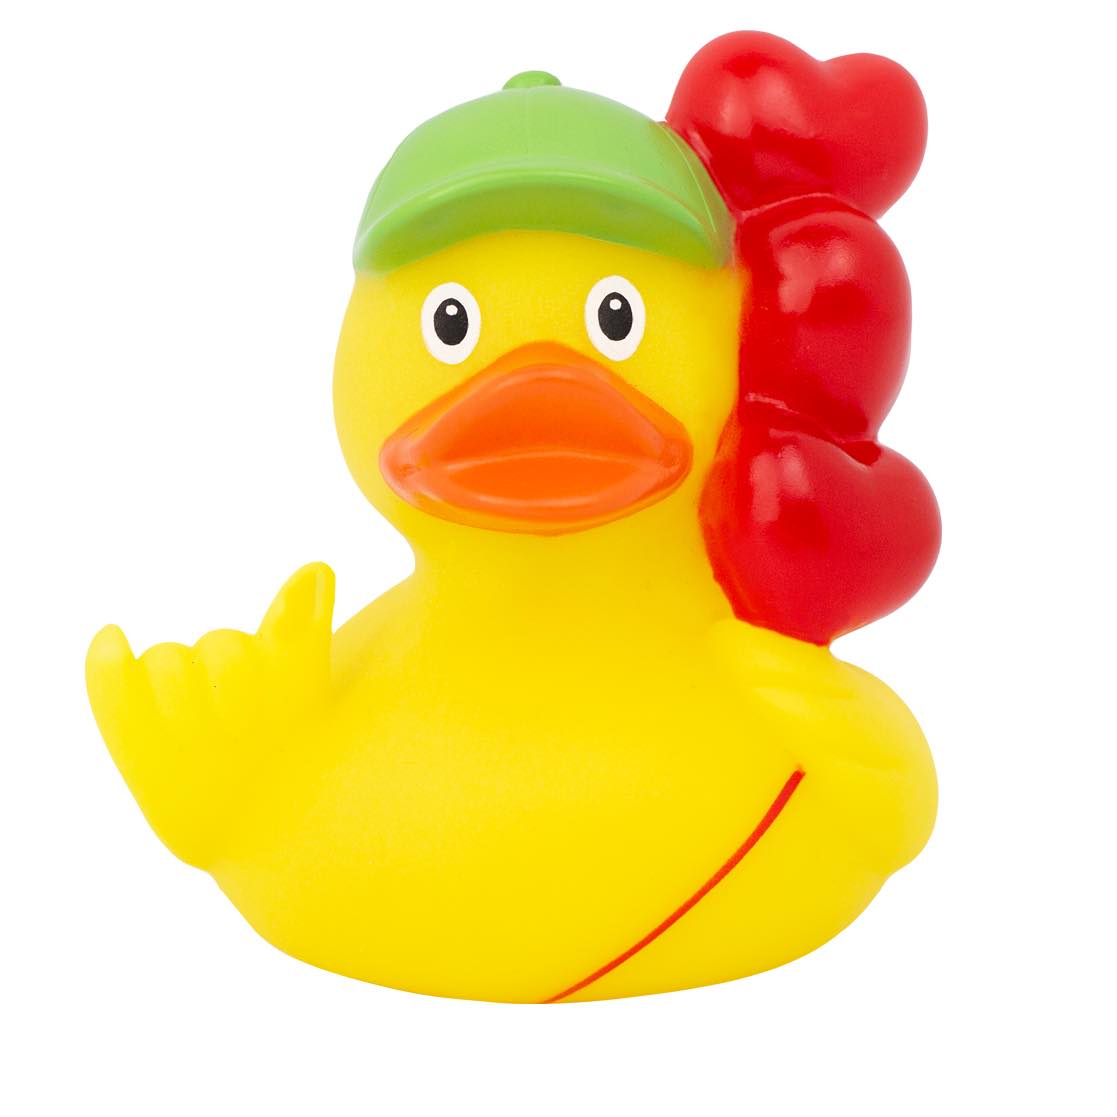 Uithoudingsvermogen injecteren output Balloon Rubber Duck | Buy premium rubber ducks online - world wide delivery!